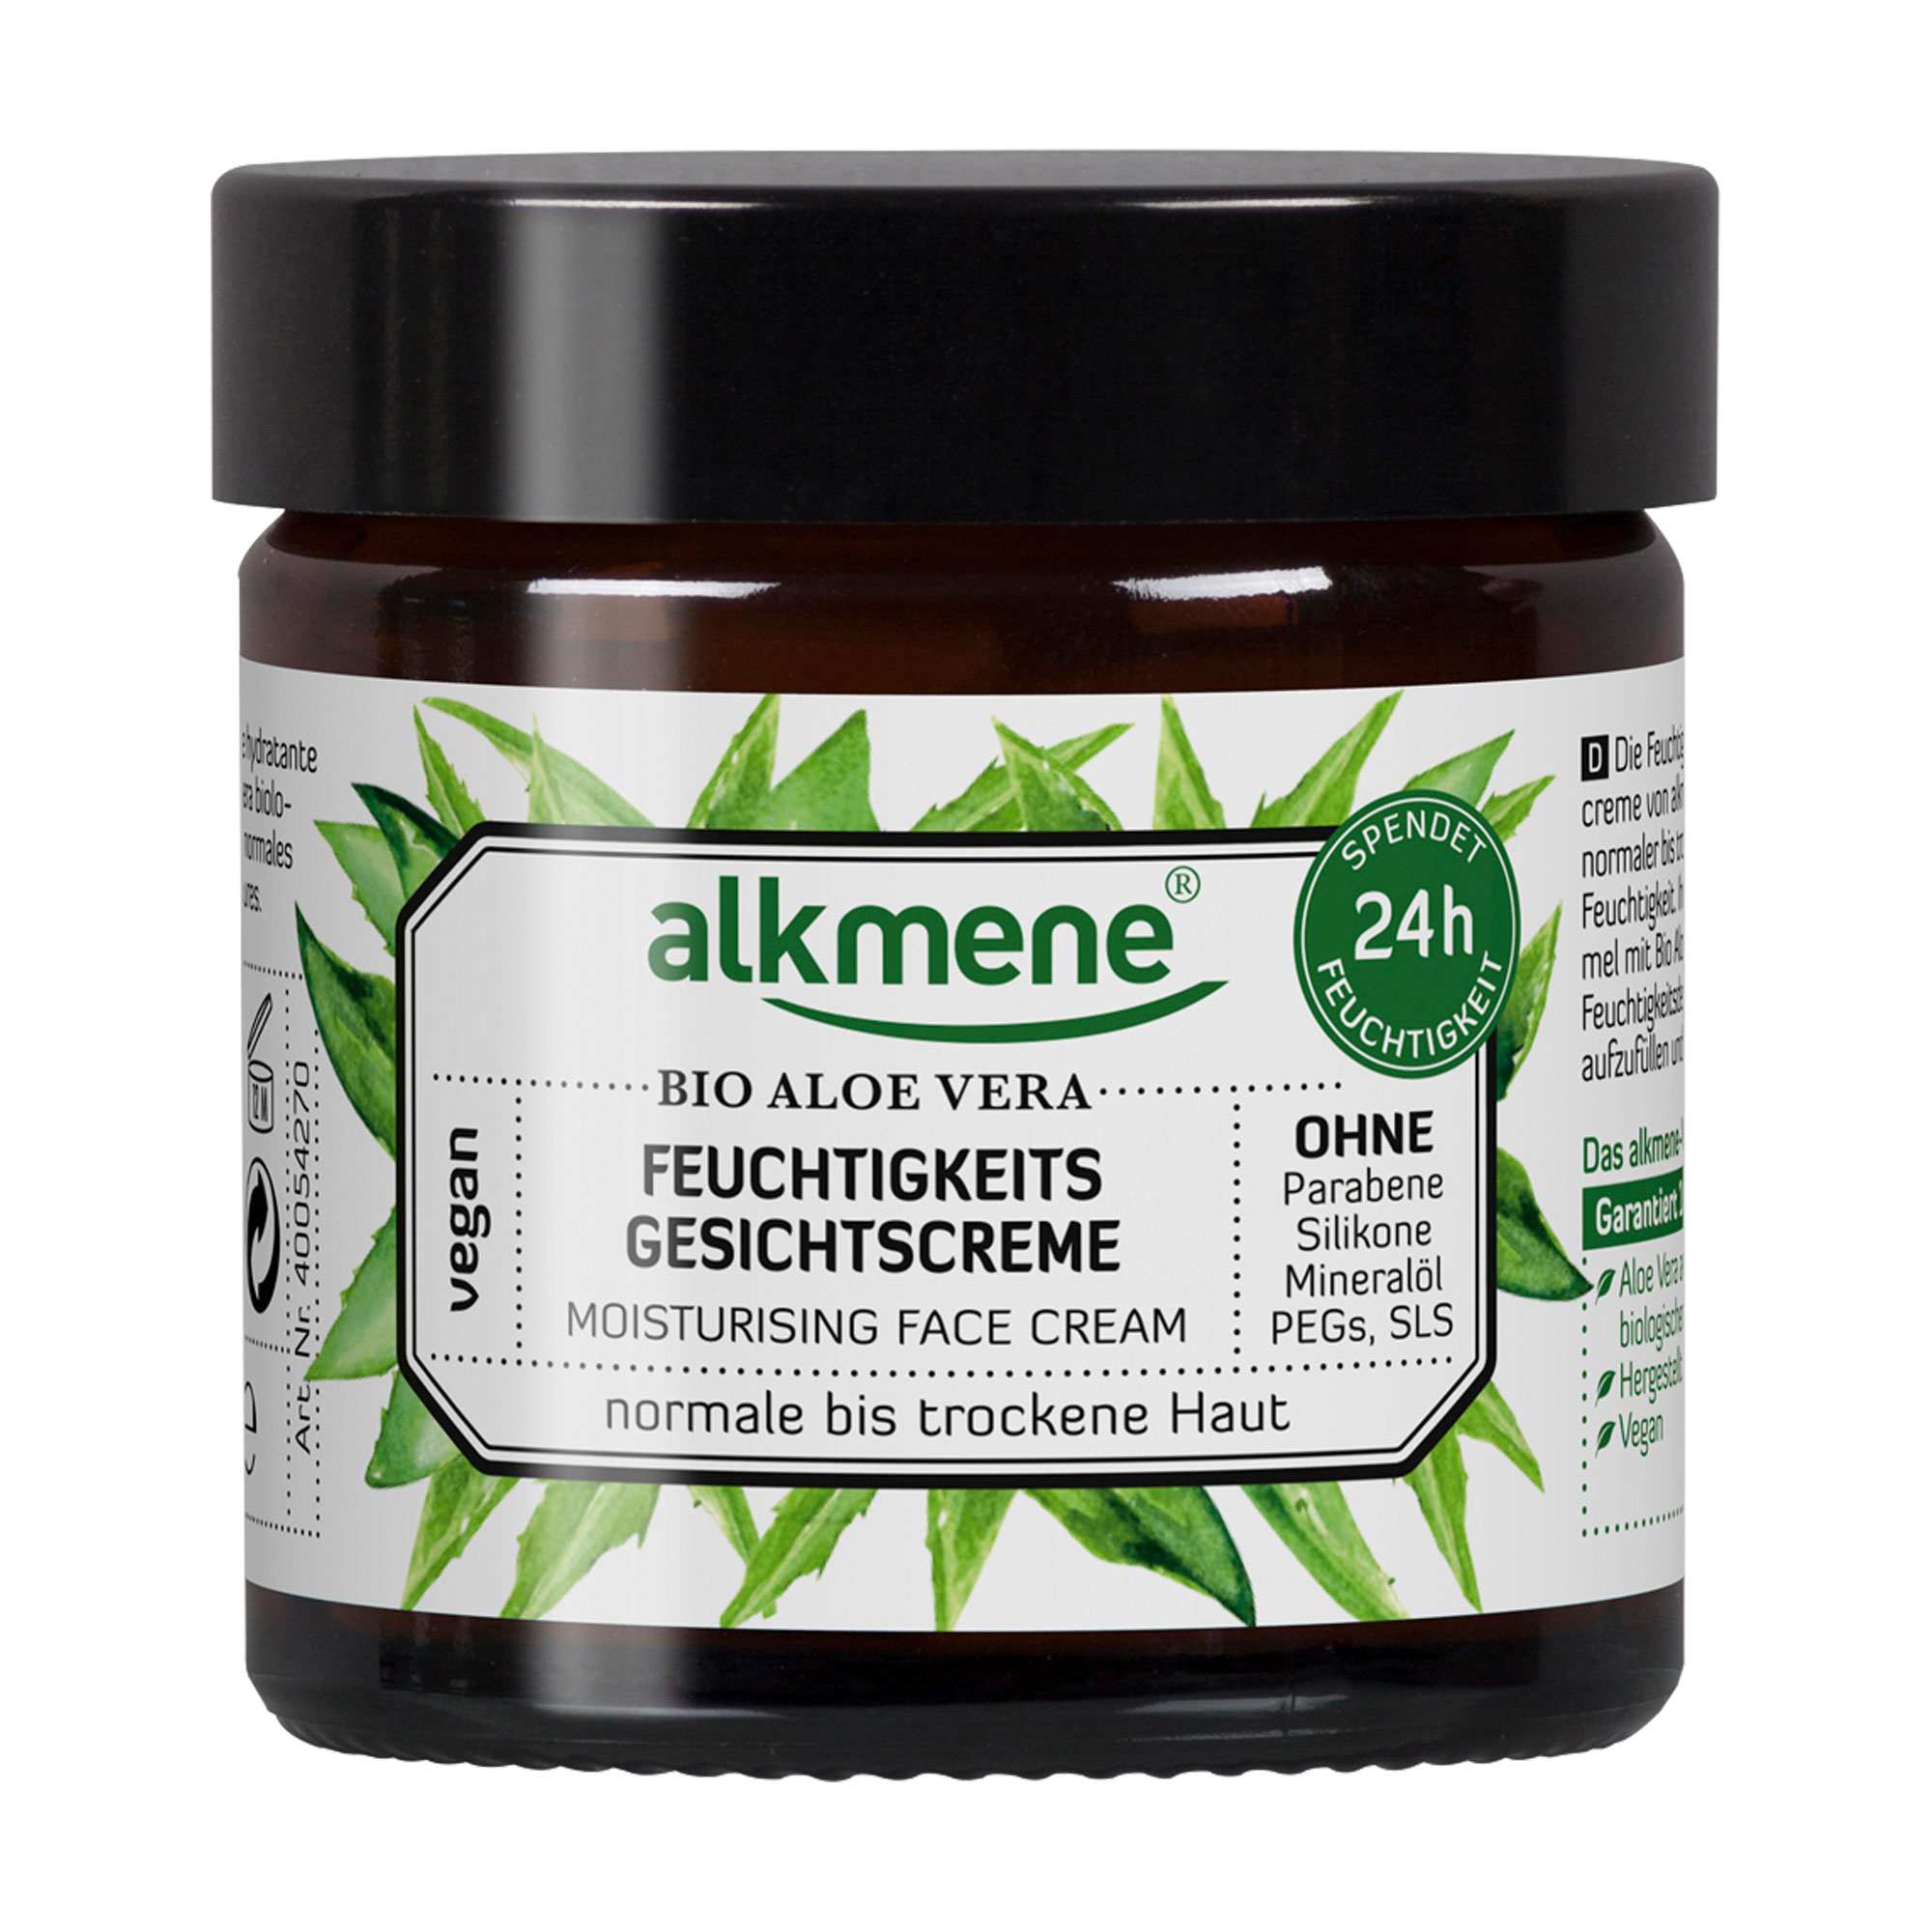 Intensive Feuchtigkeitscreme mit Bio Aloe Vera für normale bis trockene Haut.